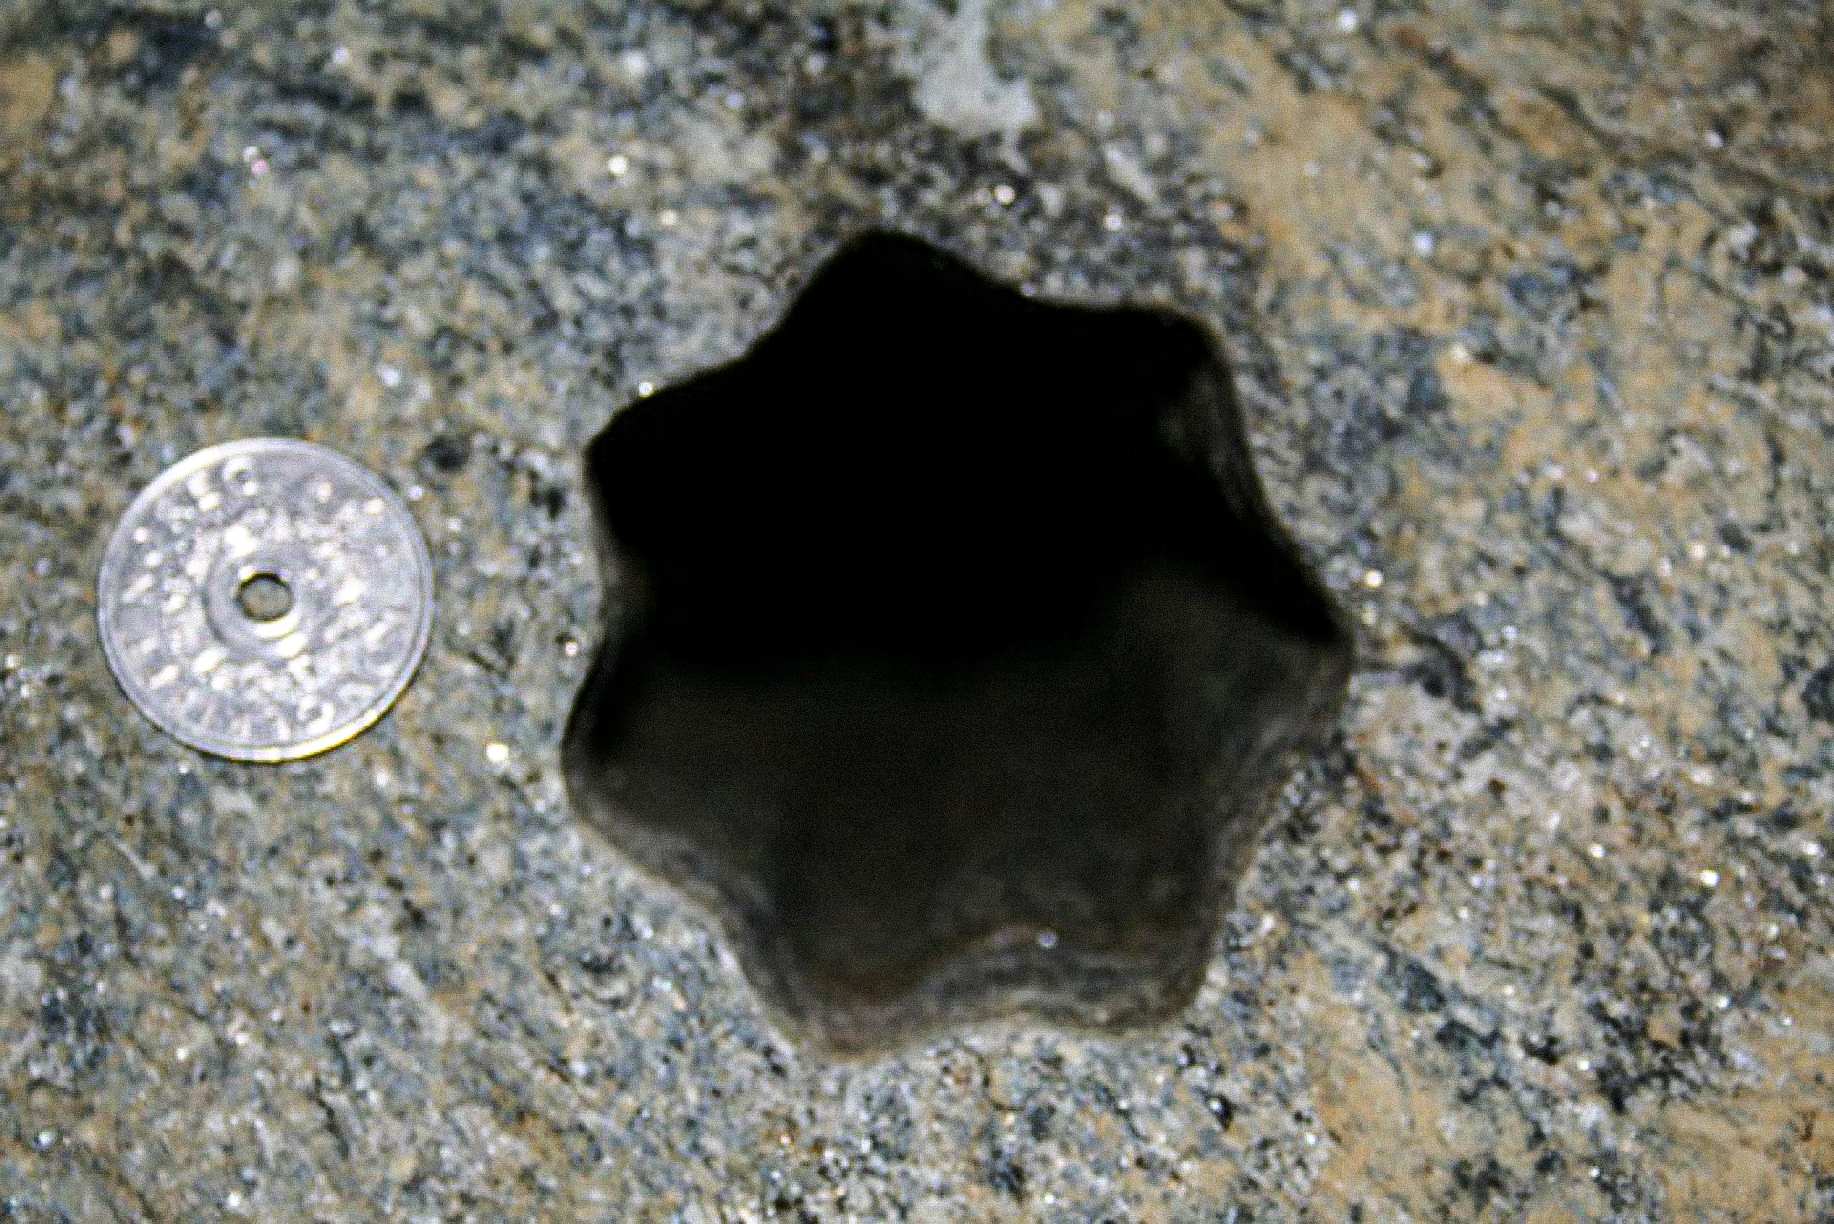 Tento hvězdicový otvor (se sedmi stranami) byl nalezen dodavateli v pátek 30. listopadu 2007 ve Voldě v Norsku. Norská pětikorunová mince má průměr 5 mm. Otvor má průměr cca 25 - 65 mm.